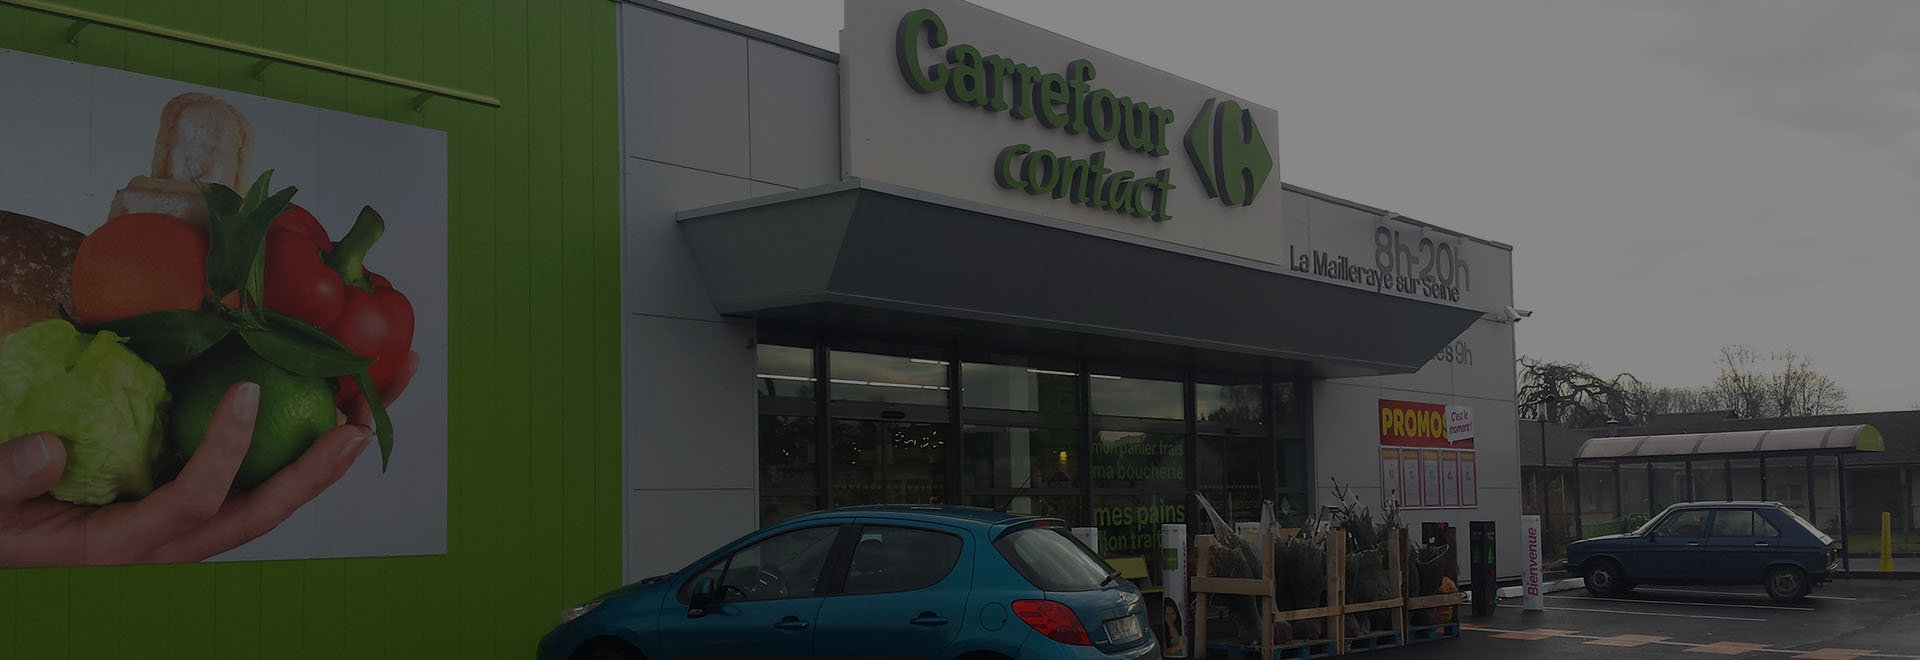  Carrefour Contact La Mailleraye sur Seine